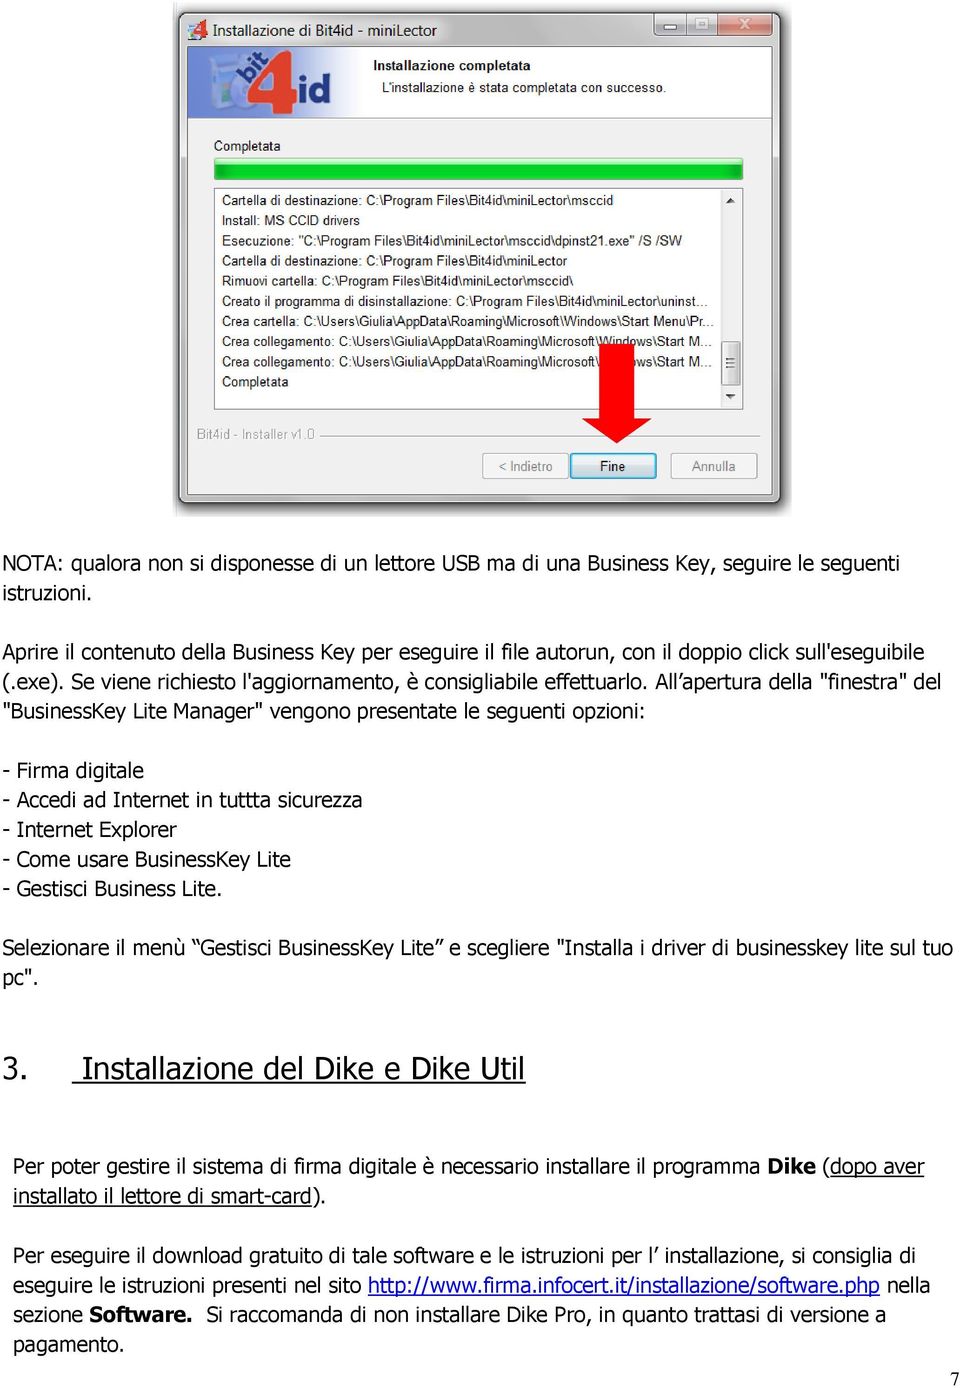 All apertura della "finestra" del "BusinessKey Lite Manager" vengono presentate le seguenti opzioni: - Firma digitale - Accedi ad Internet in tuttta sicurezza - Internet Explorer - Come usare